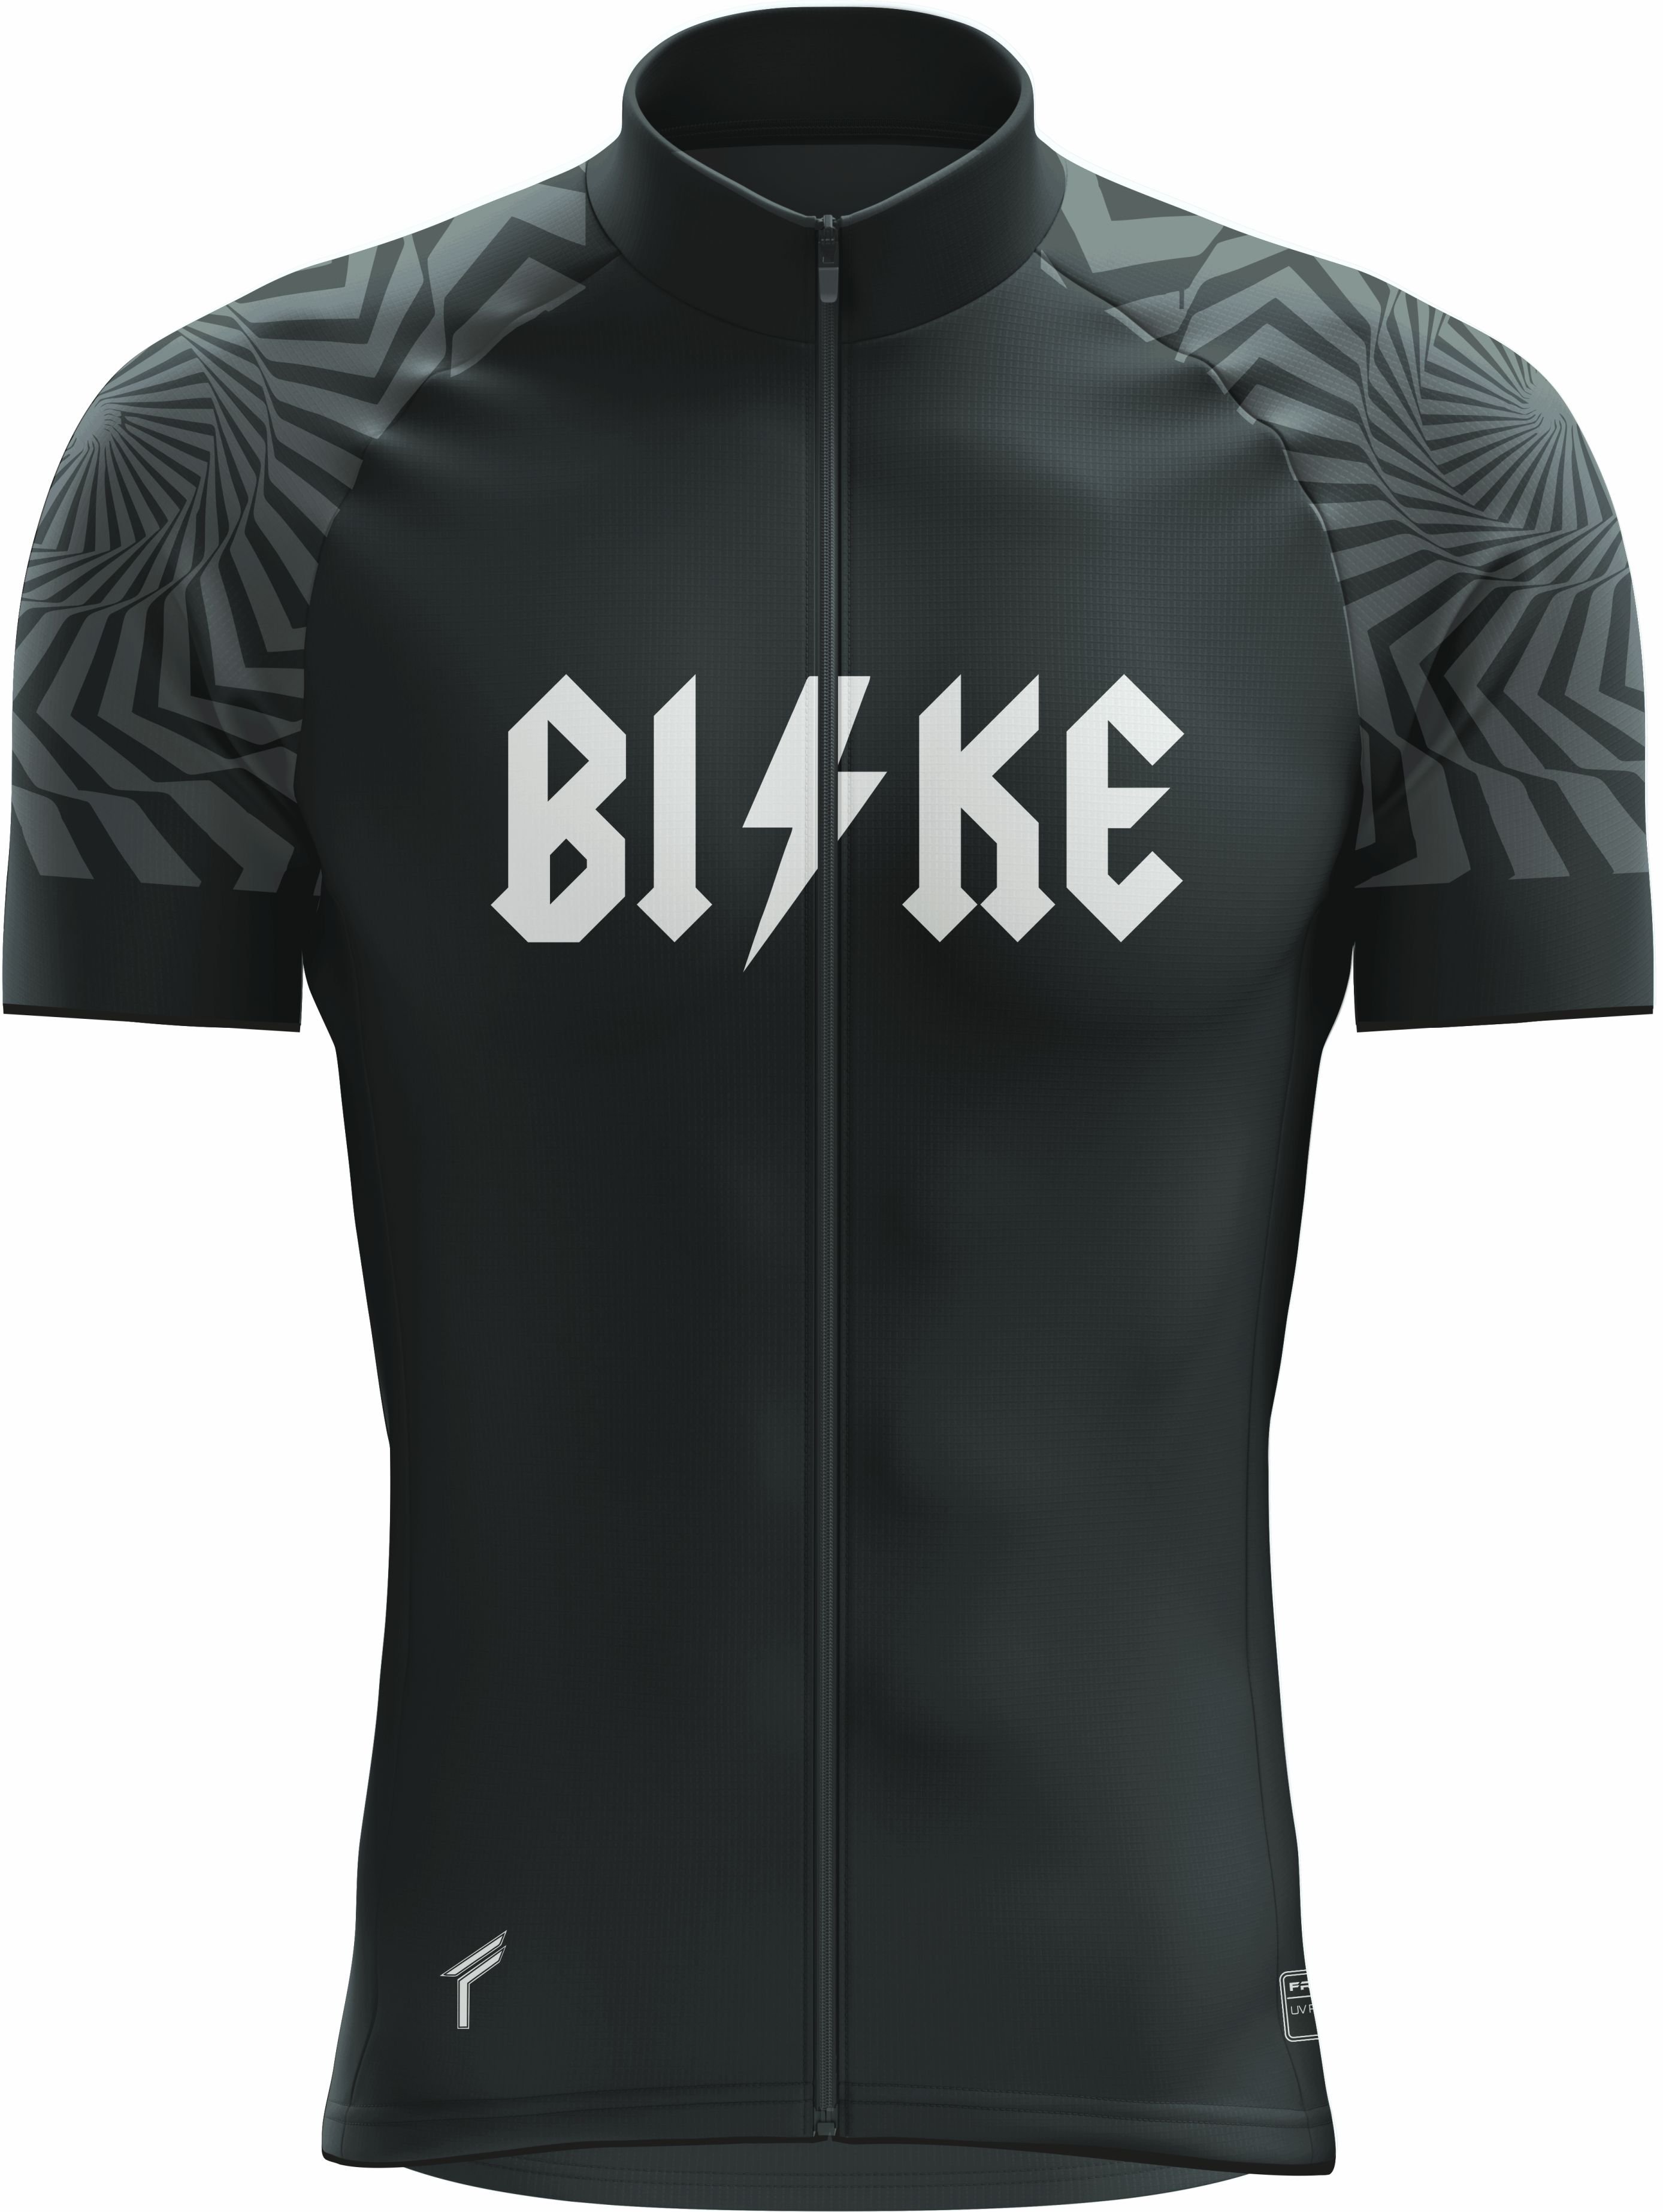 Freysport Bike Dc Bisiklet Forması